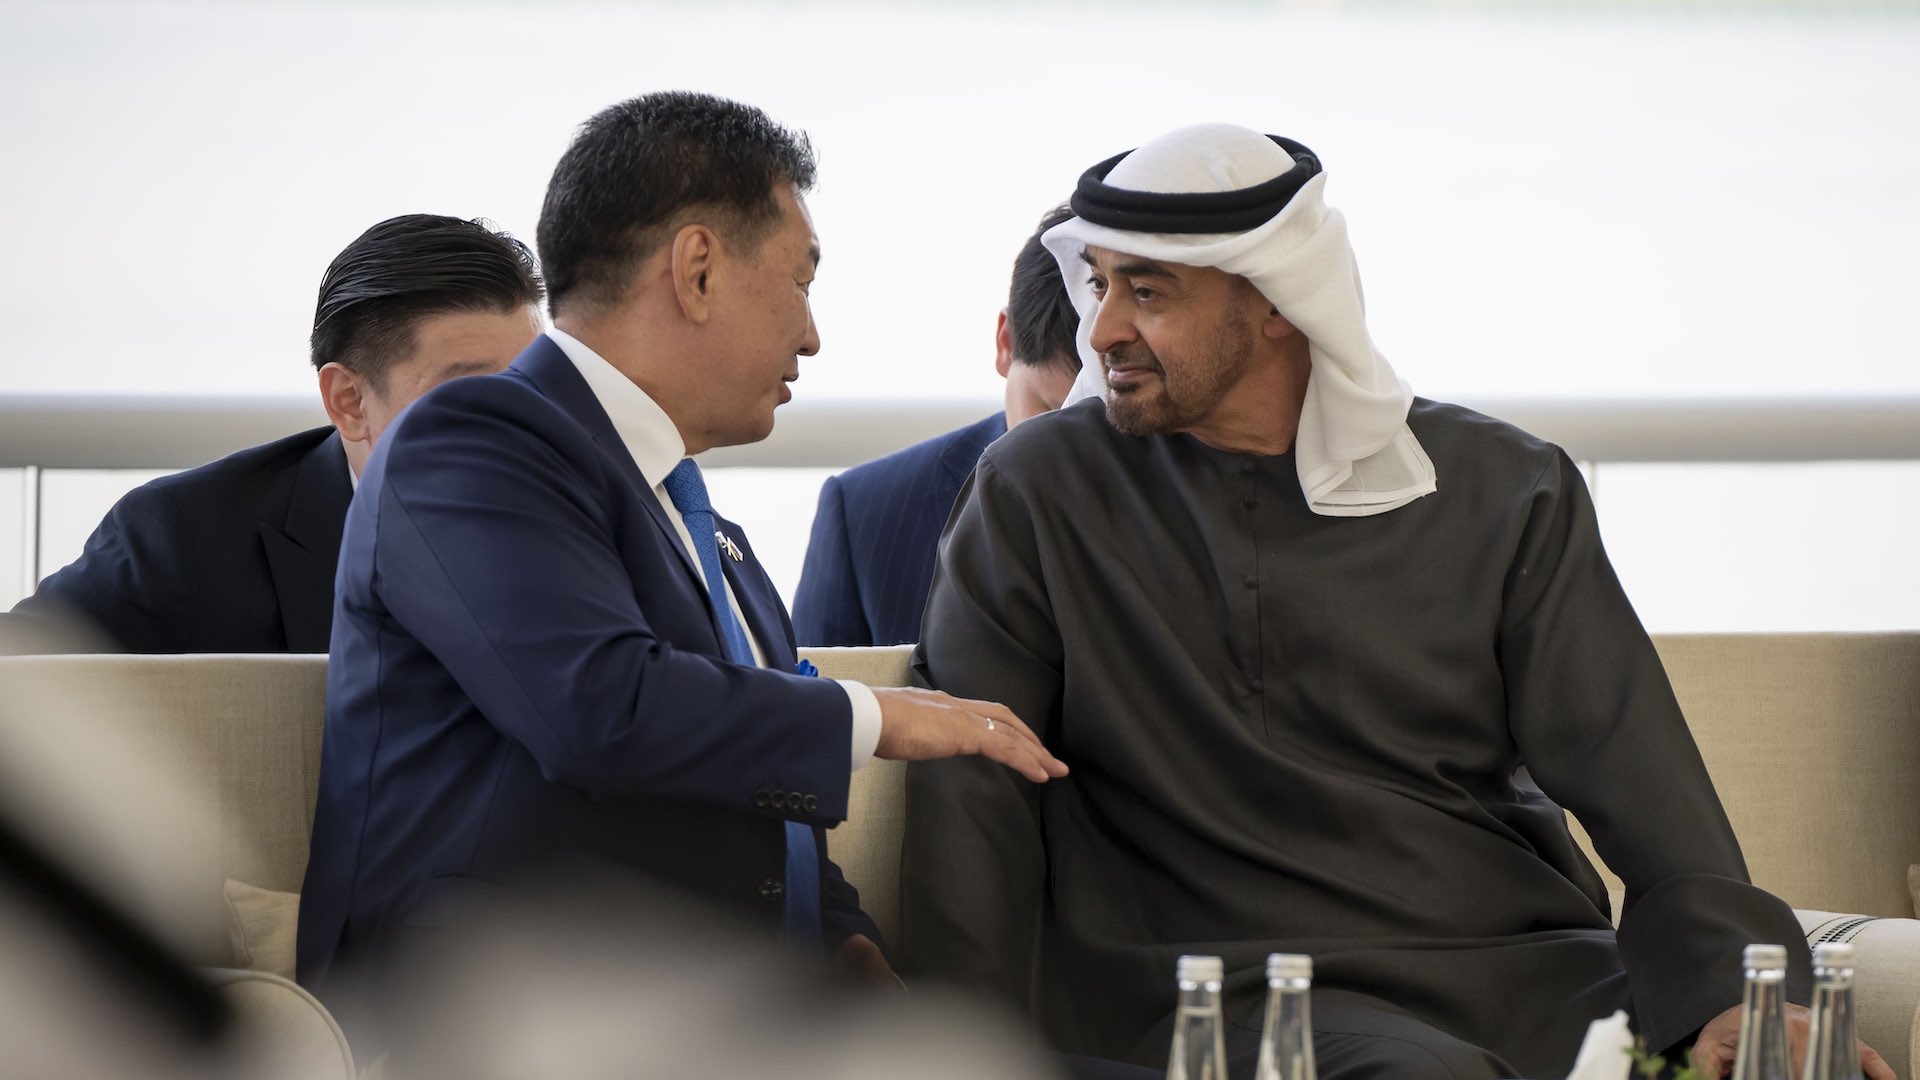 UAE आणि मंगोलियाने अबू धाबीमधील धोरणात्मक करारांसह संबंध मजबूत केले